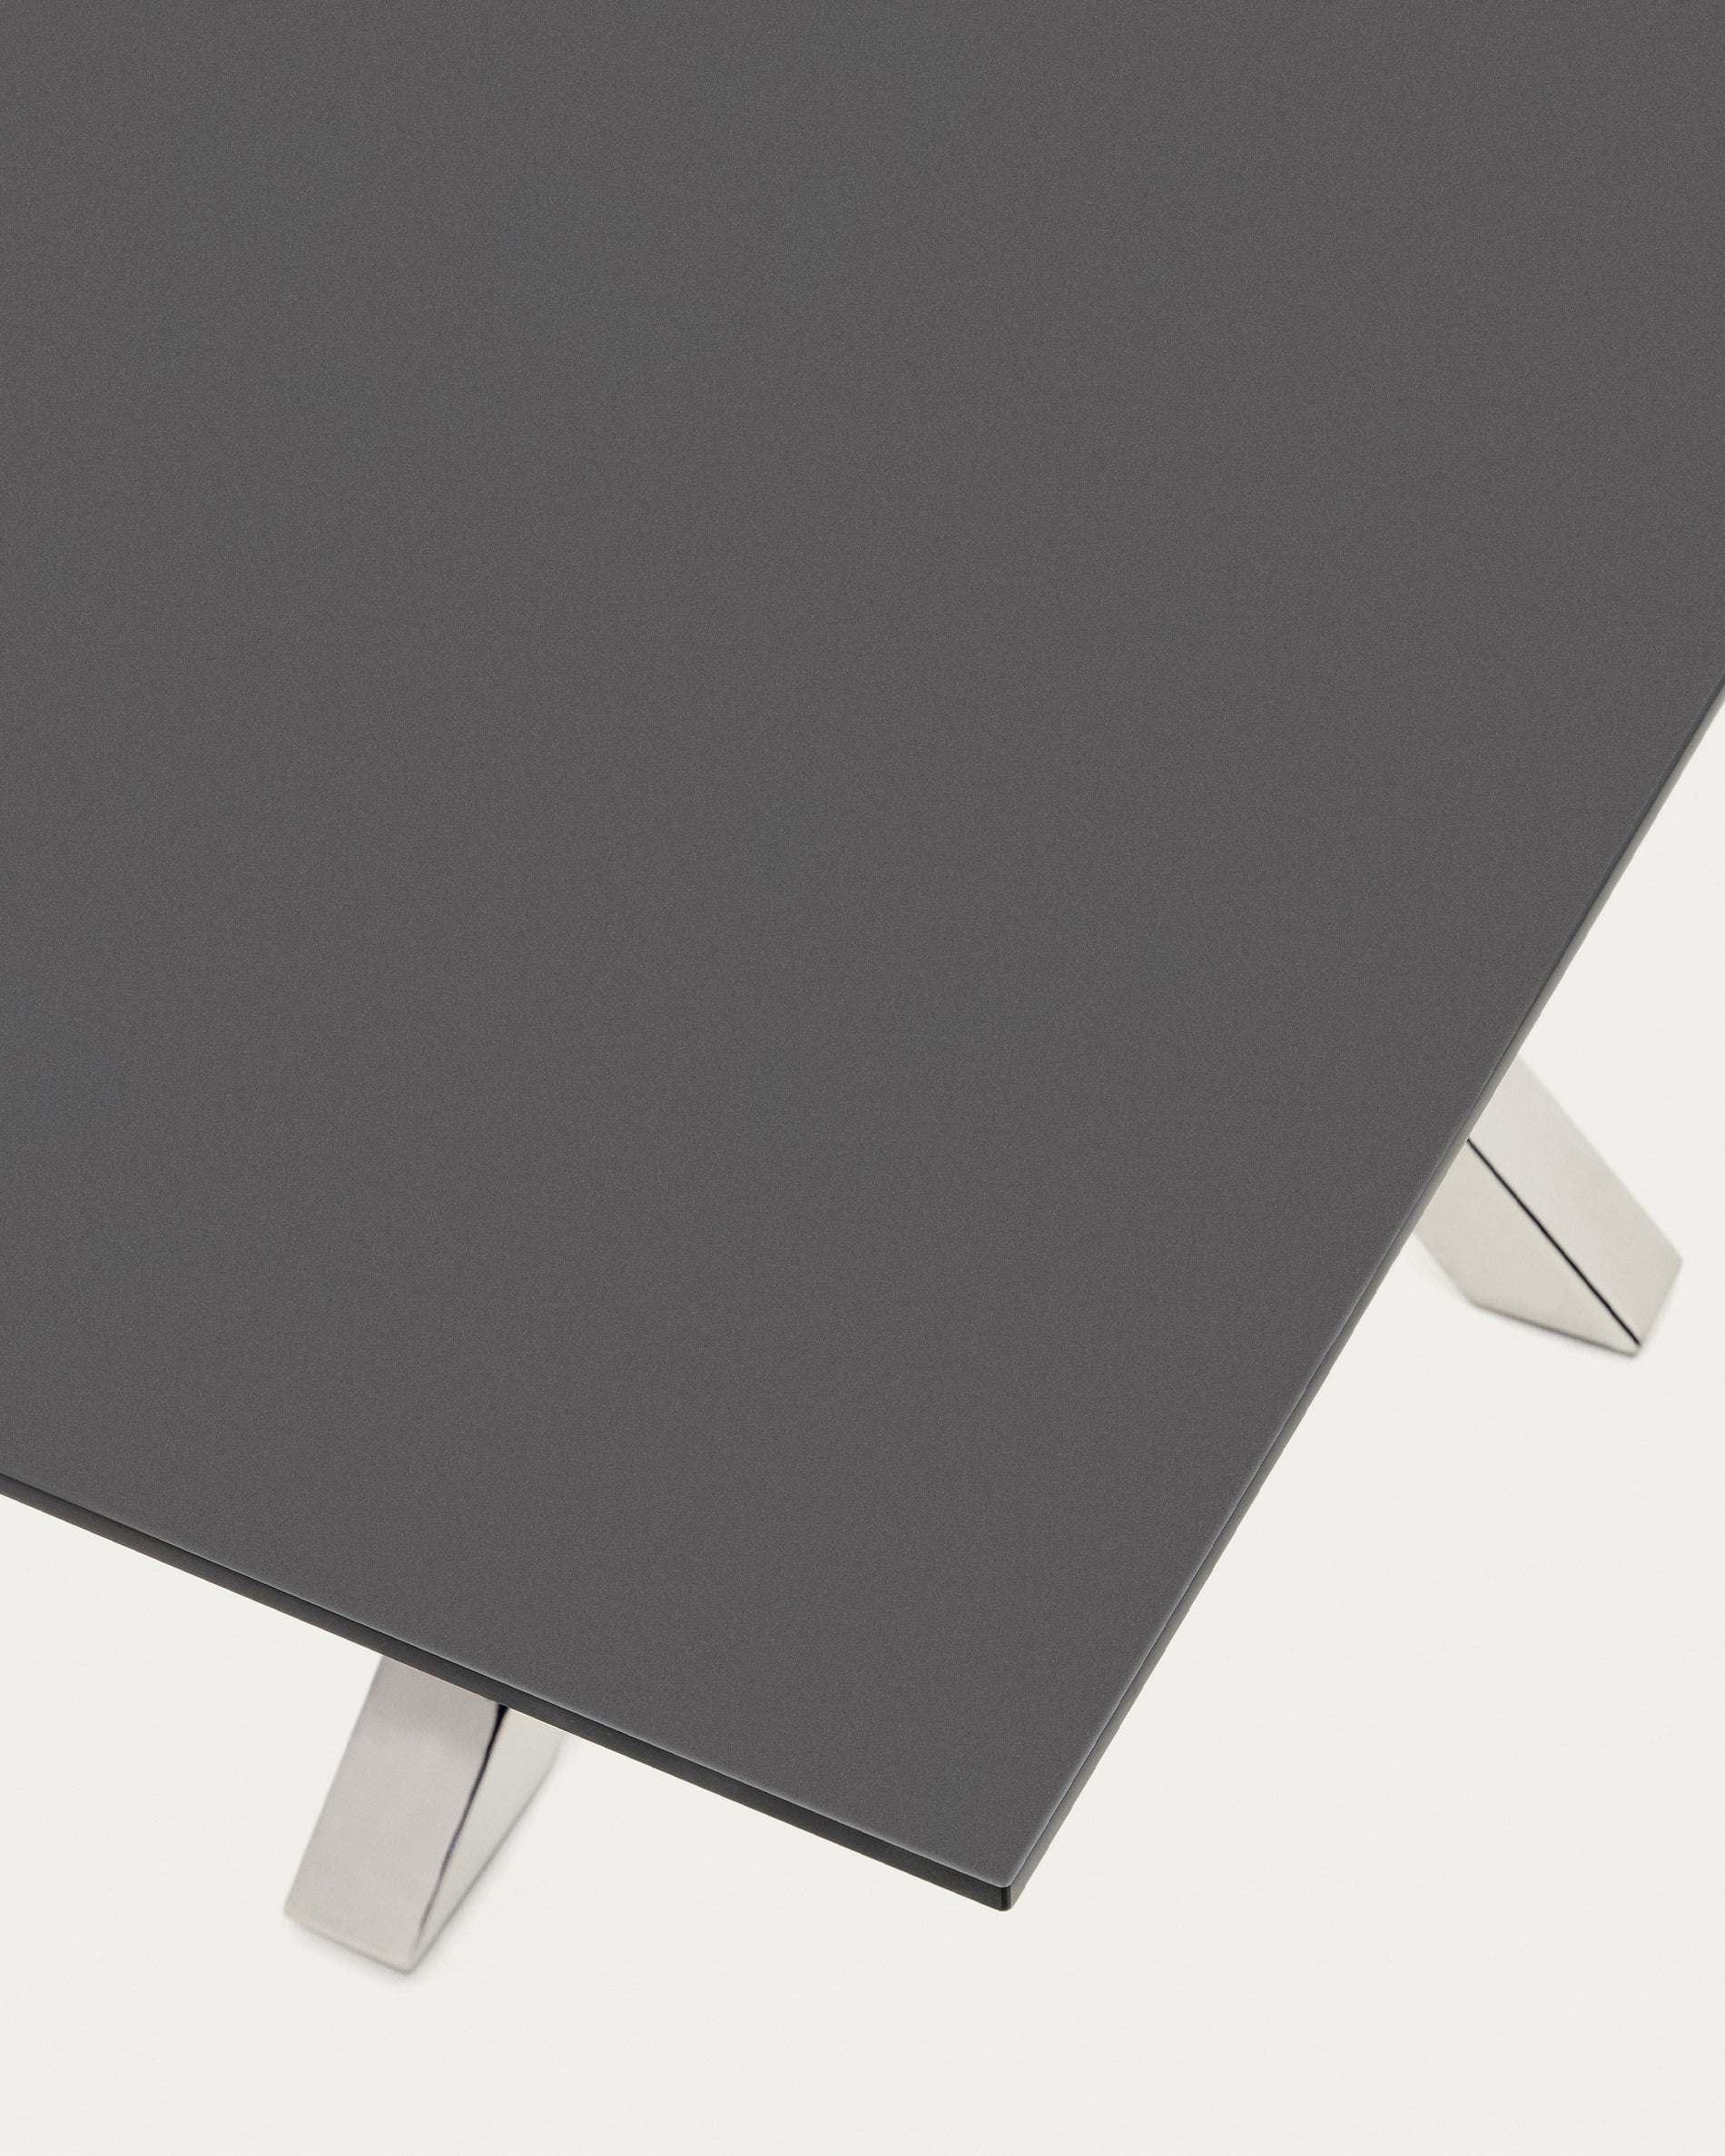 Argo asztal fekete üveggel és acéllábakkal 200 x 100 cm